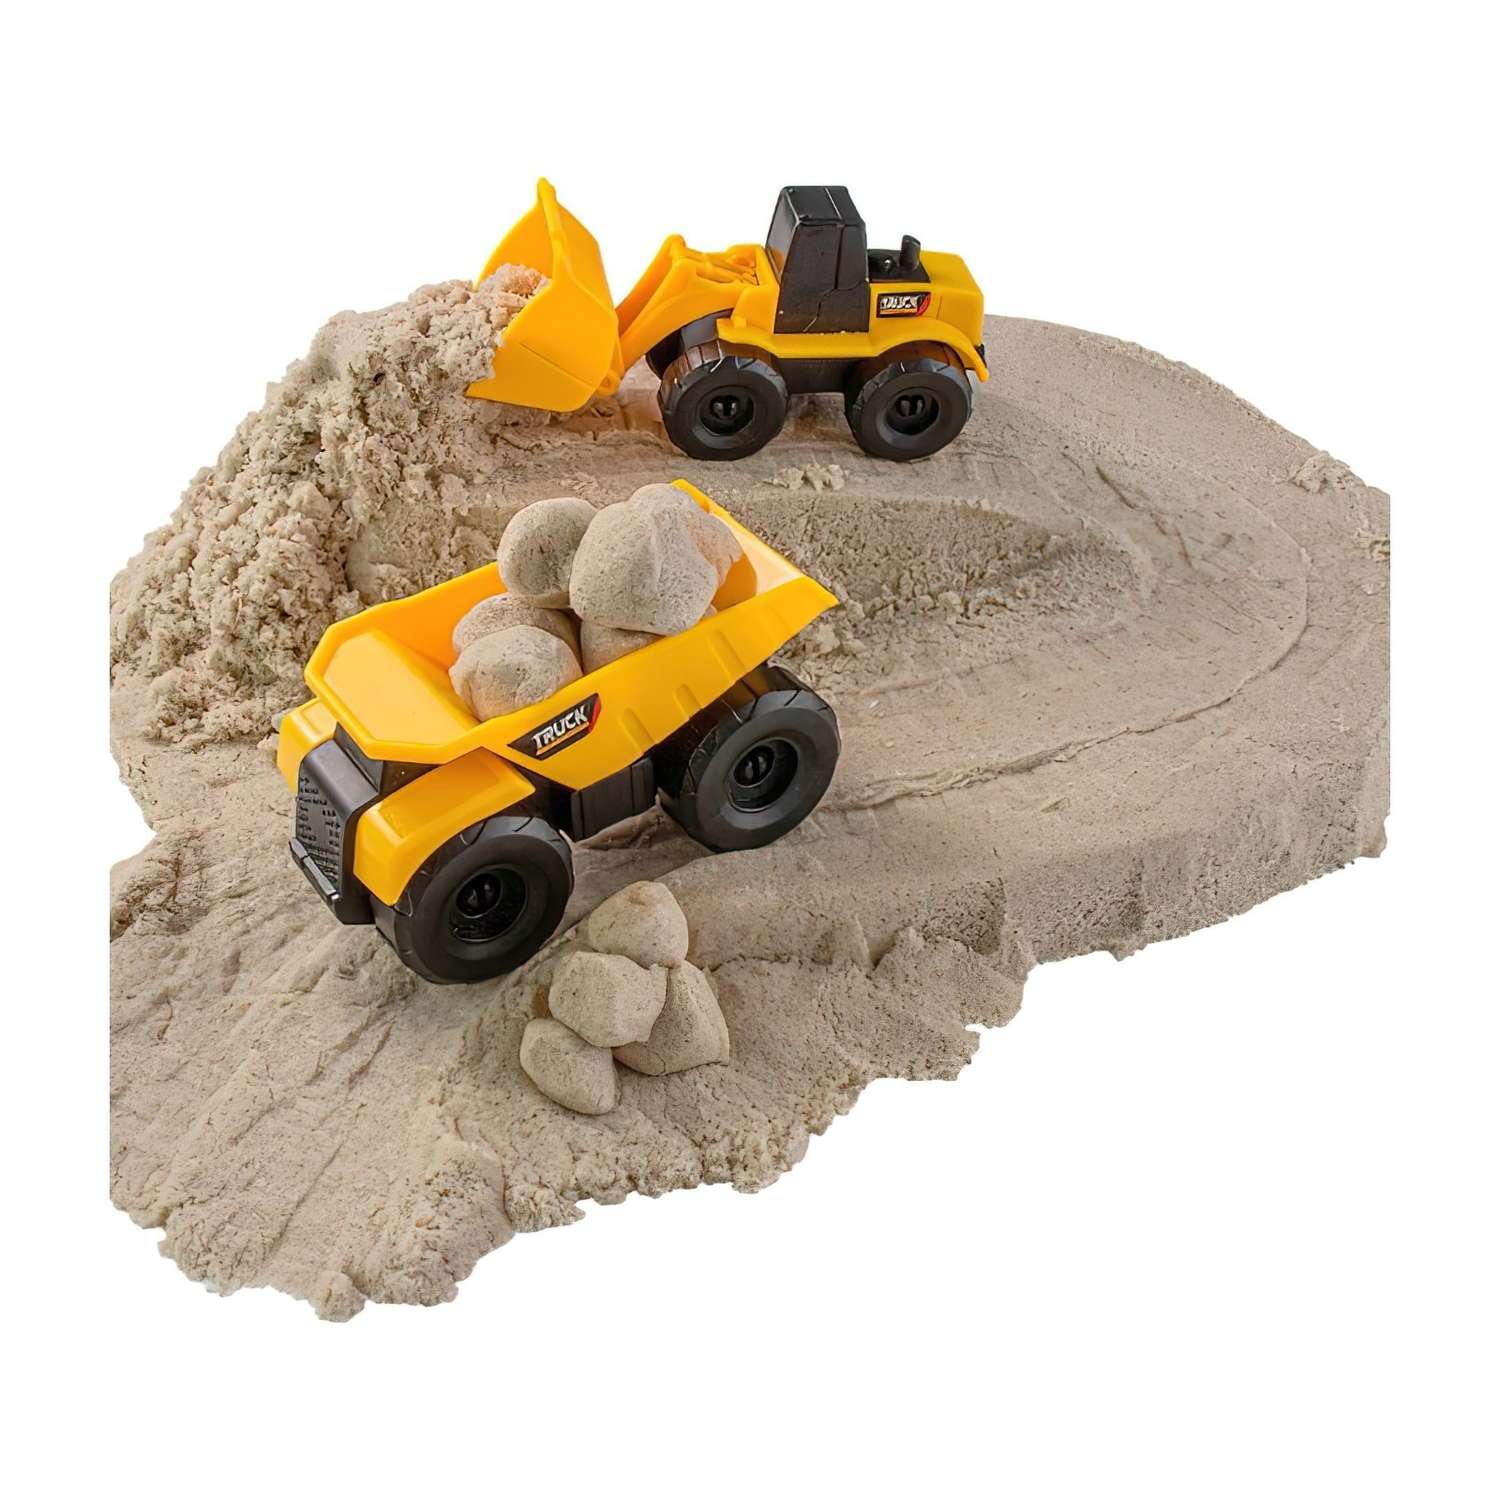 Космический песок ВОЛШЕБНЫЙ МИР набор с машинкой 2 шт. грузовик и трактор песочный 2 кг - фото 3